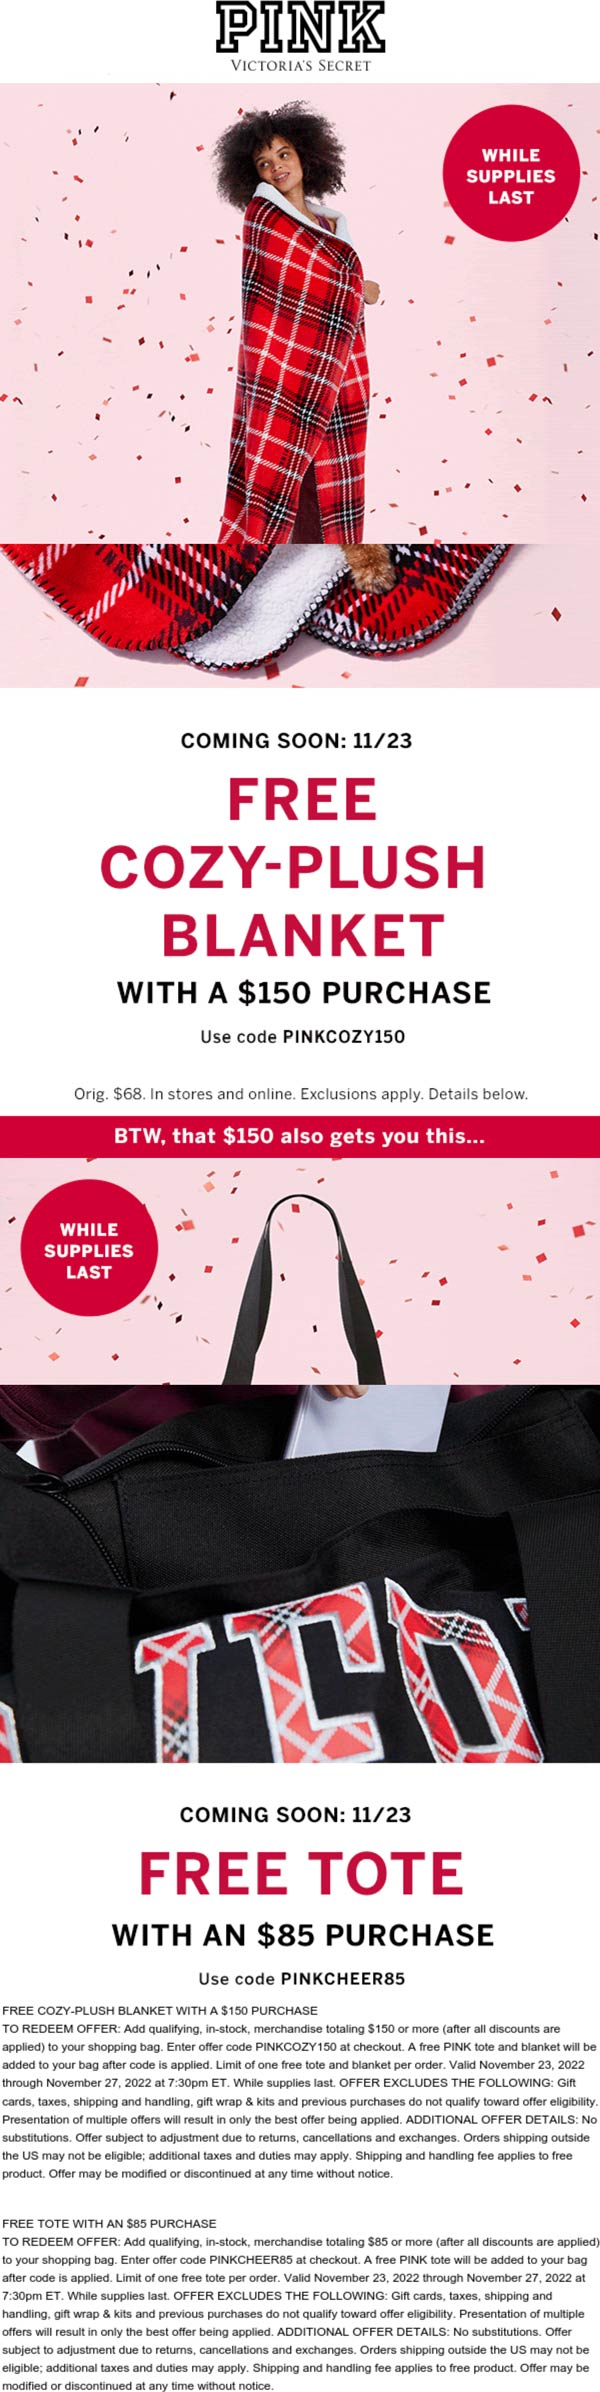 PINK stores Coupon  Free blanket + tote on $150 at PINK via promo code PINKCOZY150 & PINKCHEER85 #pink 